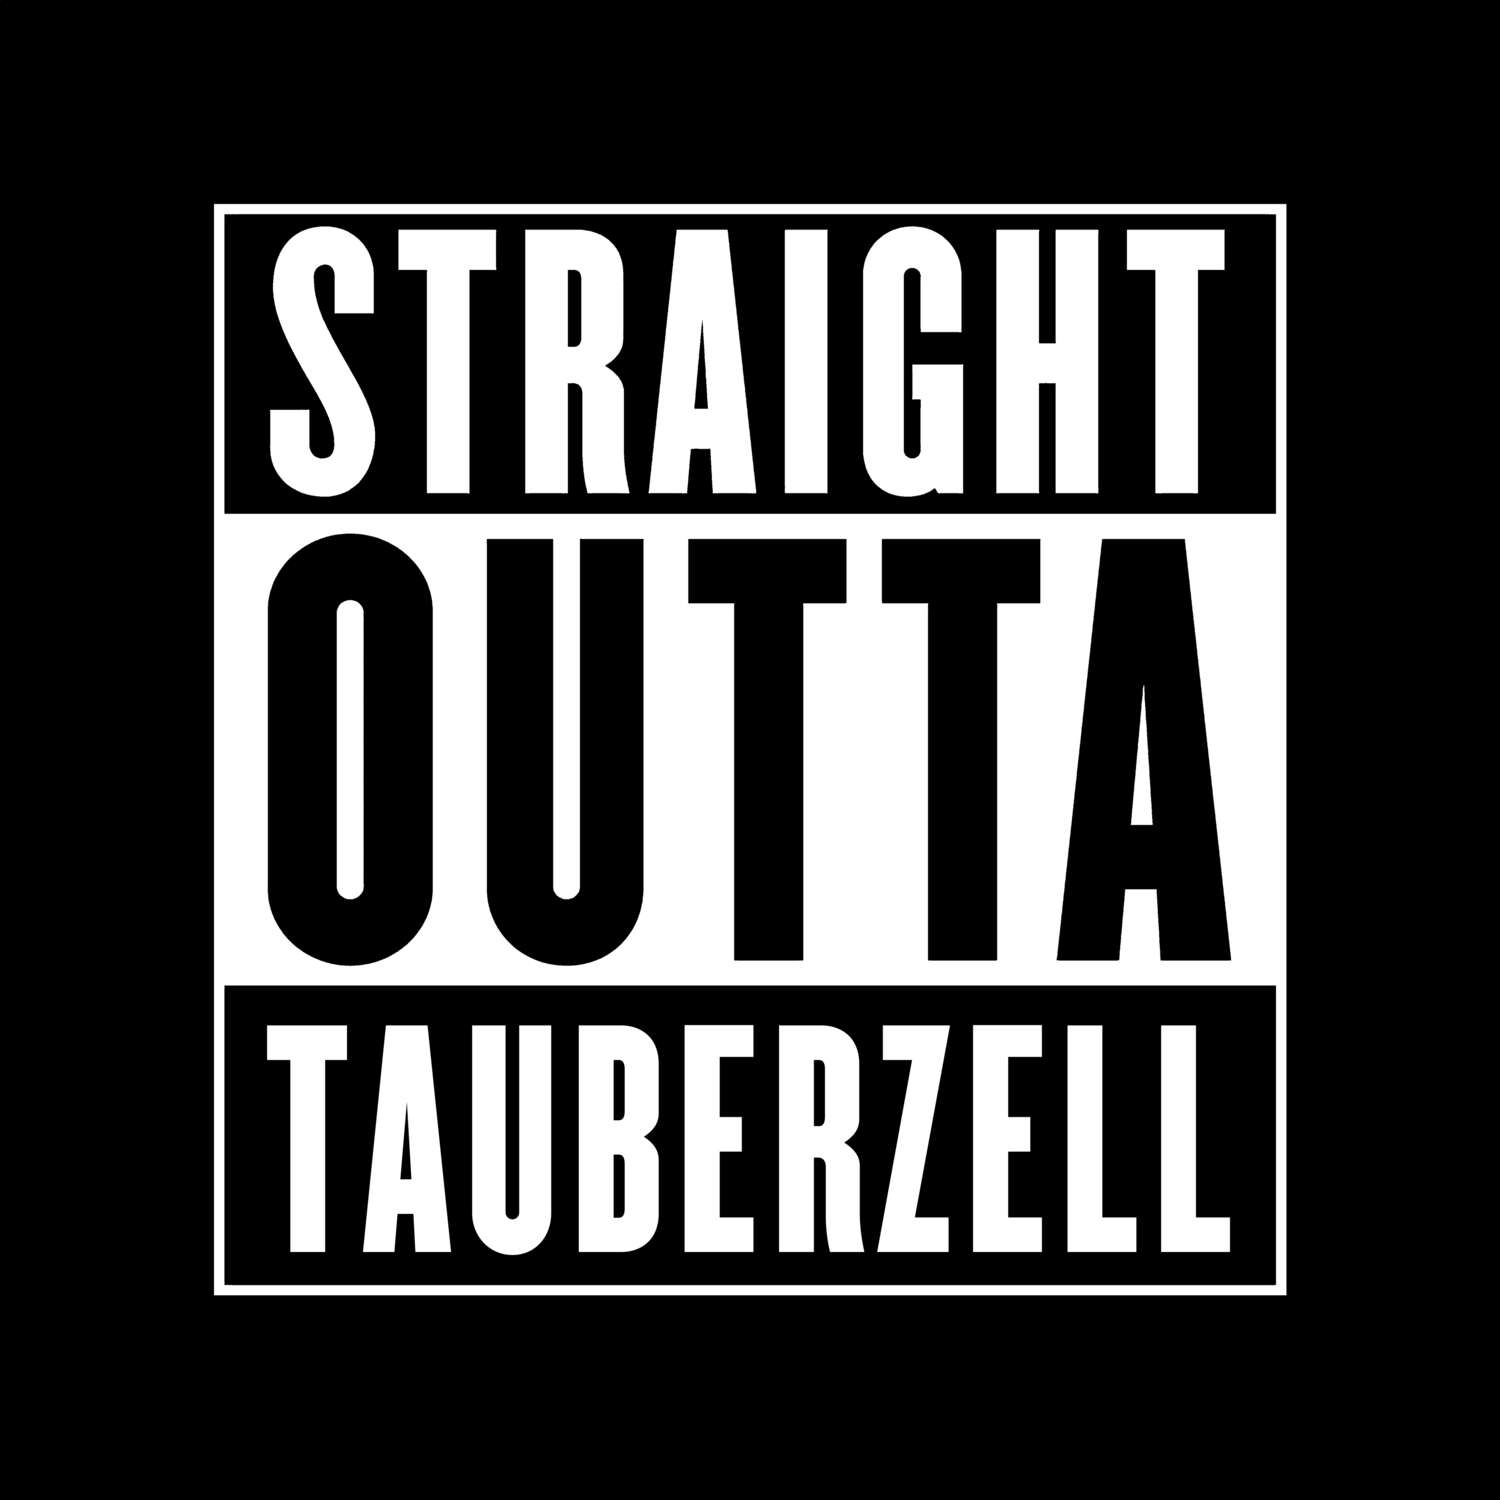 Tauberzell T-Shirt »Straight Outta«